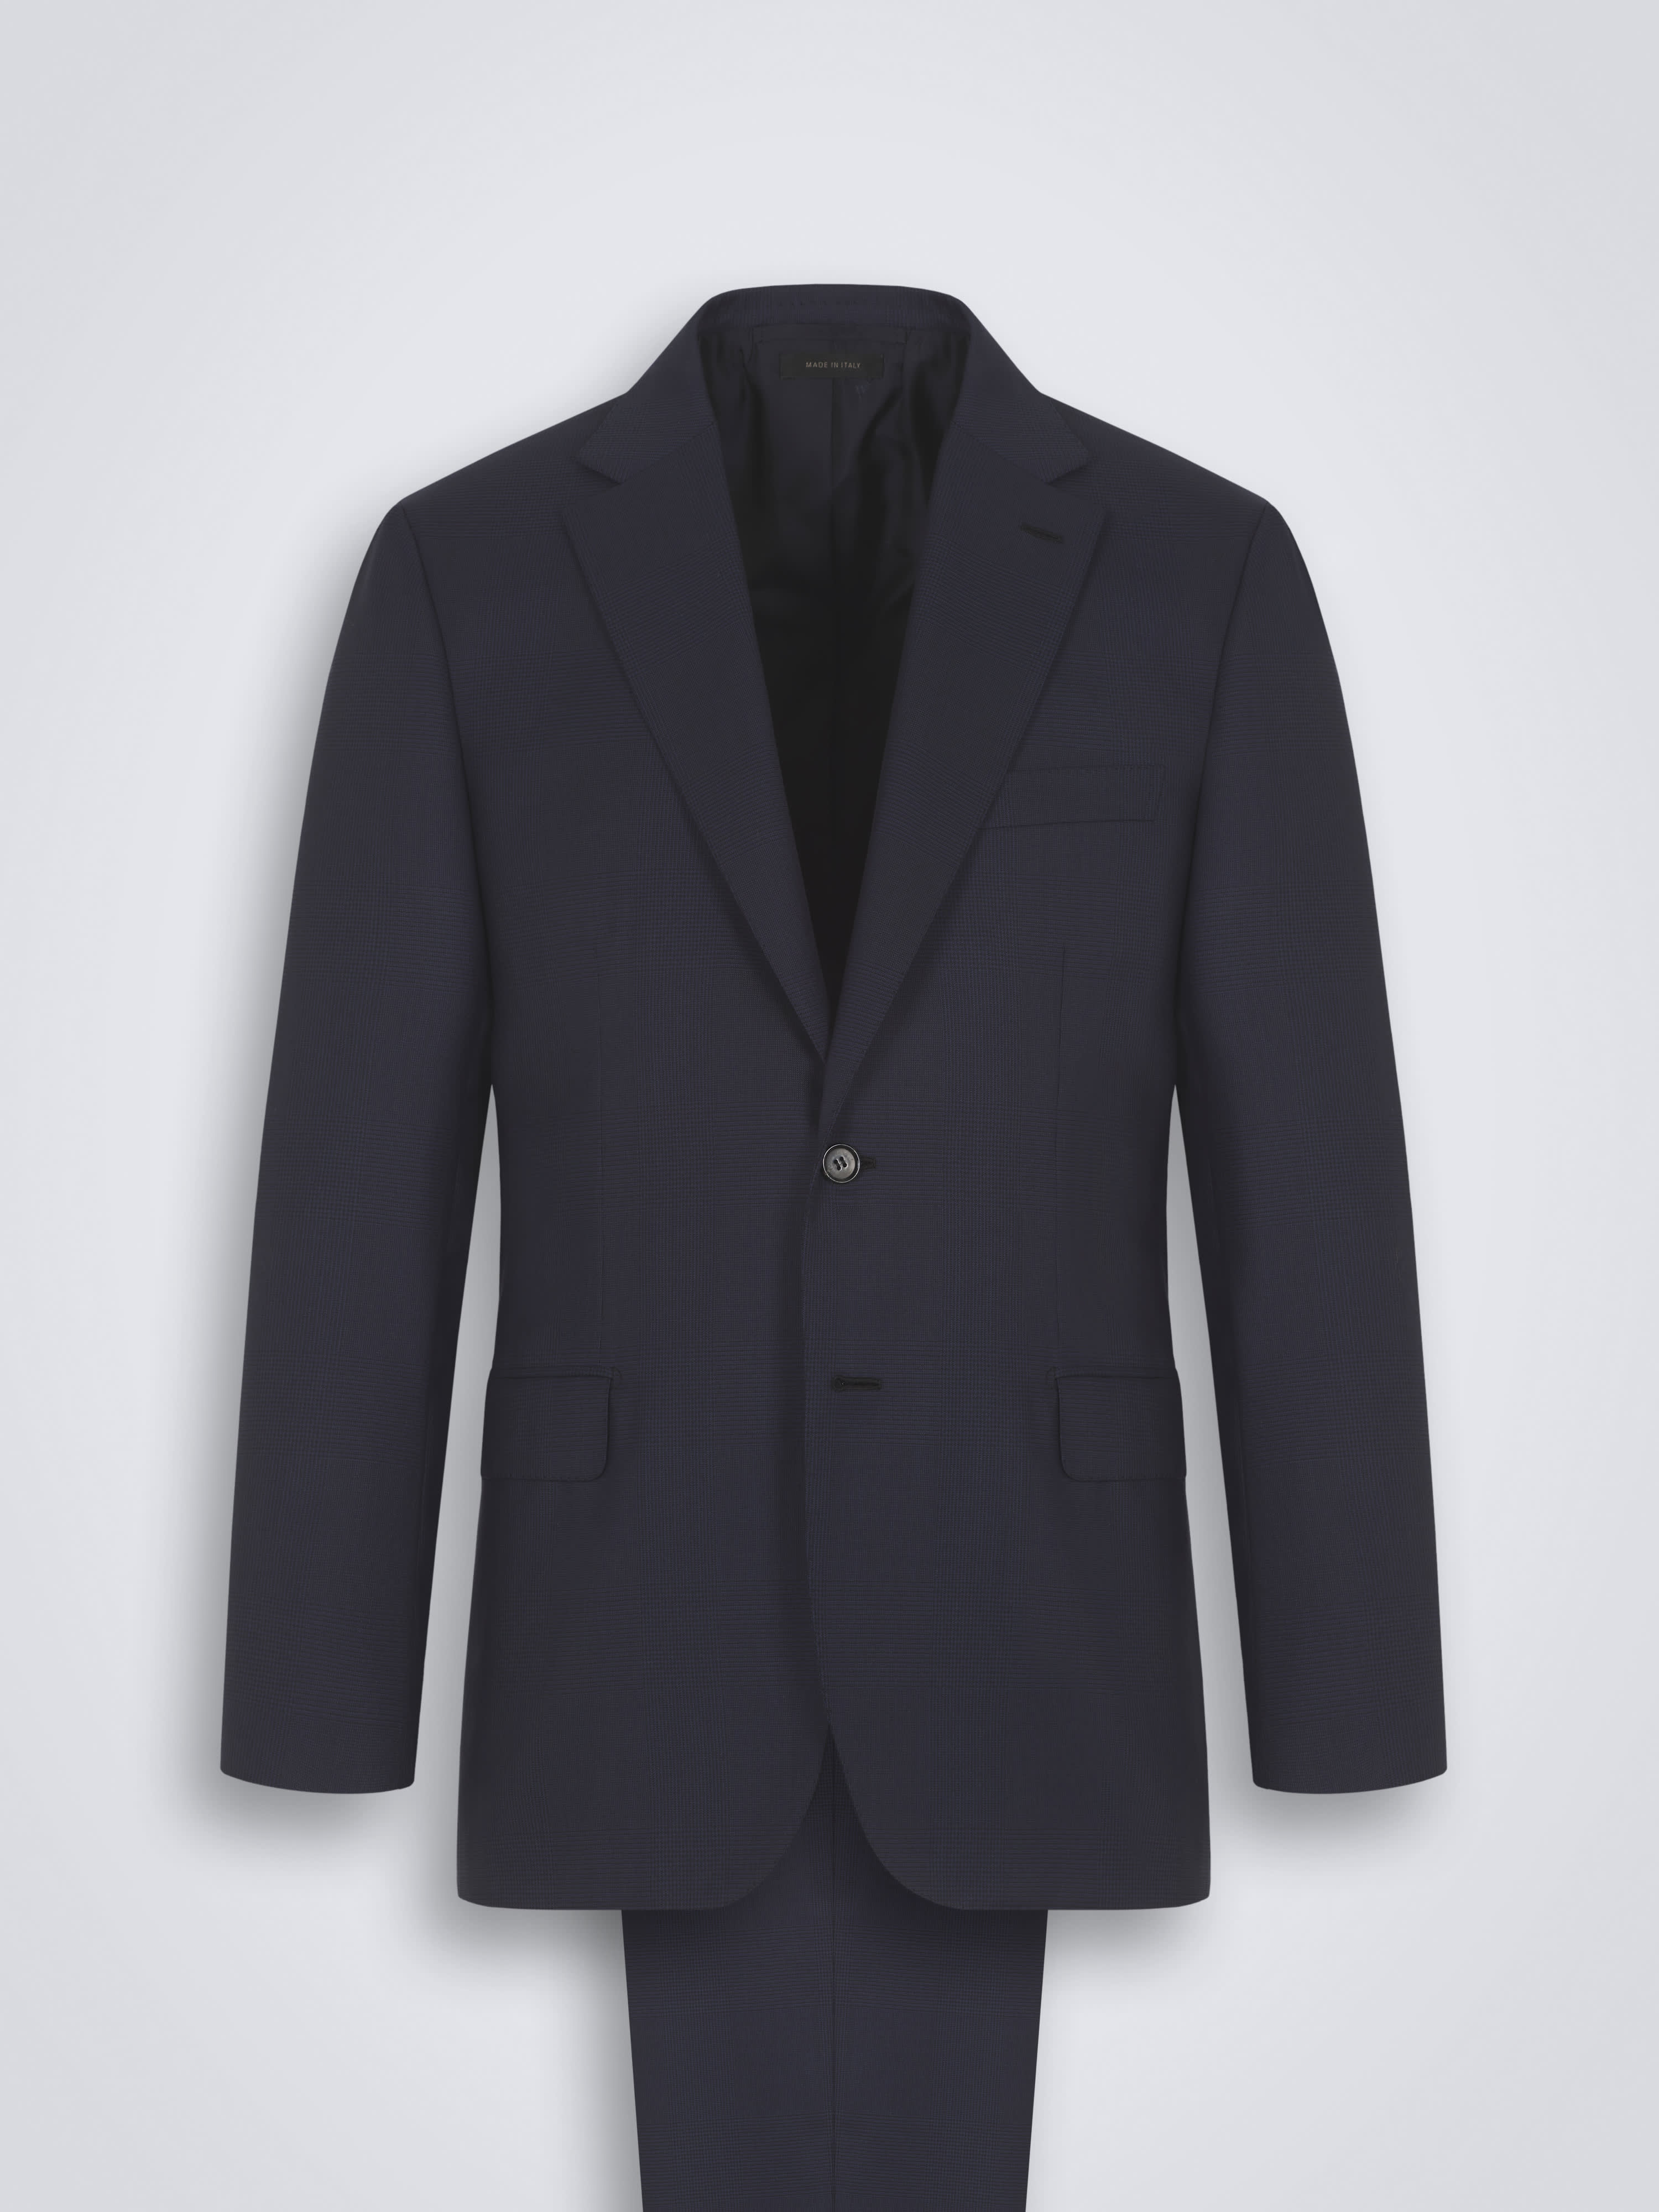 best discount sale White House Black Market 2 pc suit size 8 long